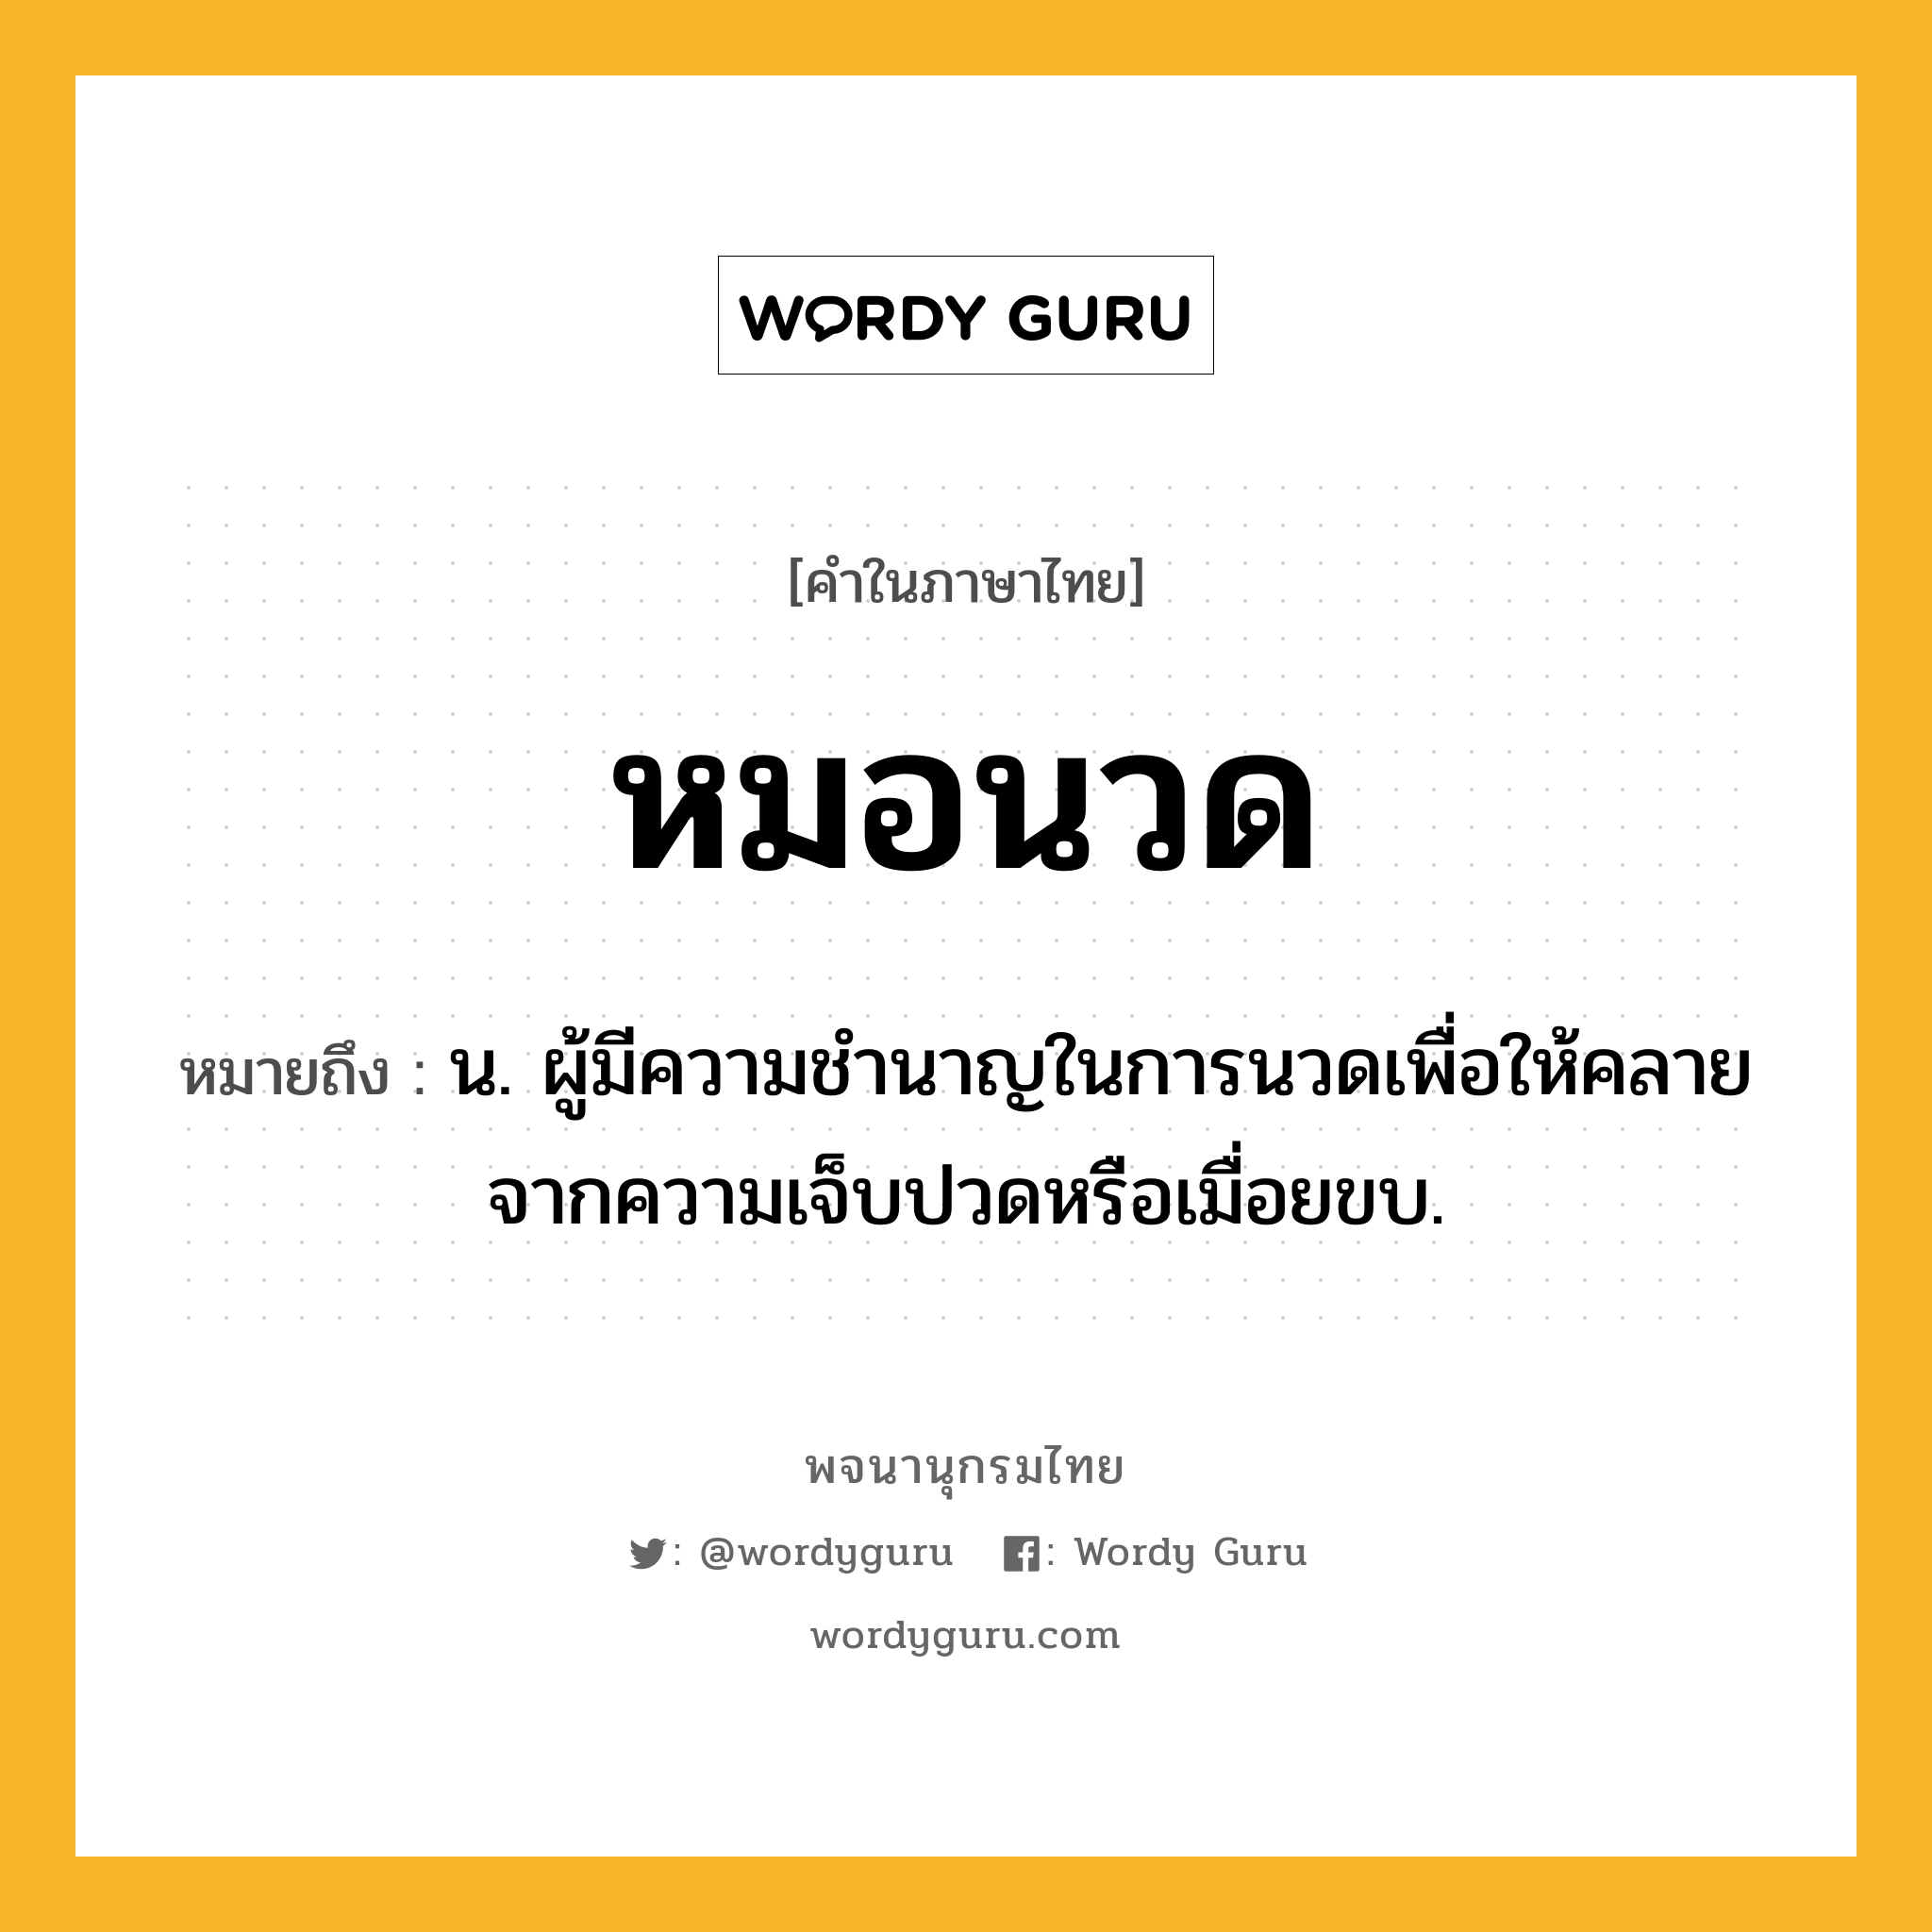 หมอนวด ความหมาย หมายถึงอะไร?, คำในภาษาไทย หมอนวด หมายถึง น. ผู้มีความชำนาญในการนวดเพื่อให้คลายจากความเจ็บปวดหรือเมื่อยขบ.